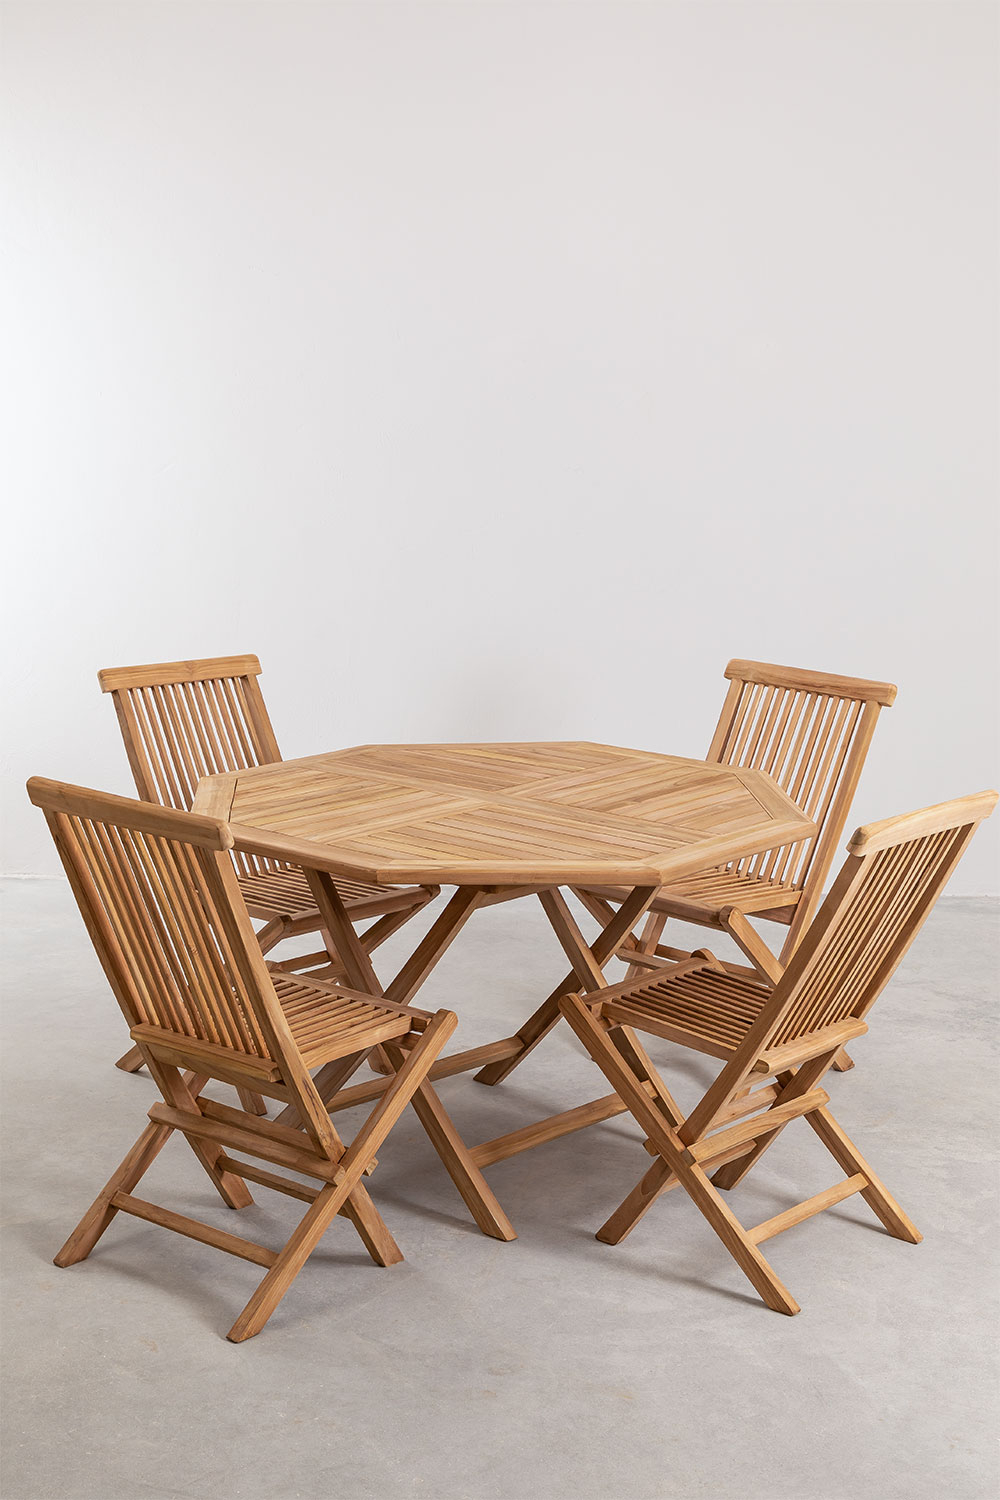 Tavolo alto in legno di pino piano quadrato e piedino in metallo (70x70 cm)  BALDUR (naturale) - AMP Story 9619